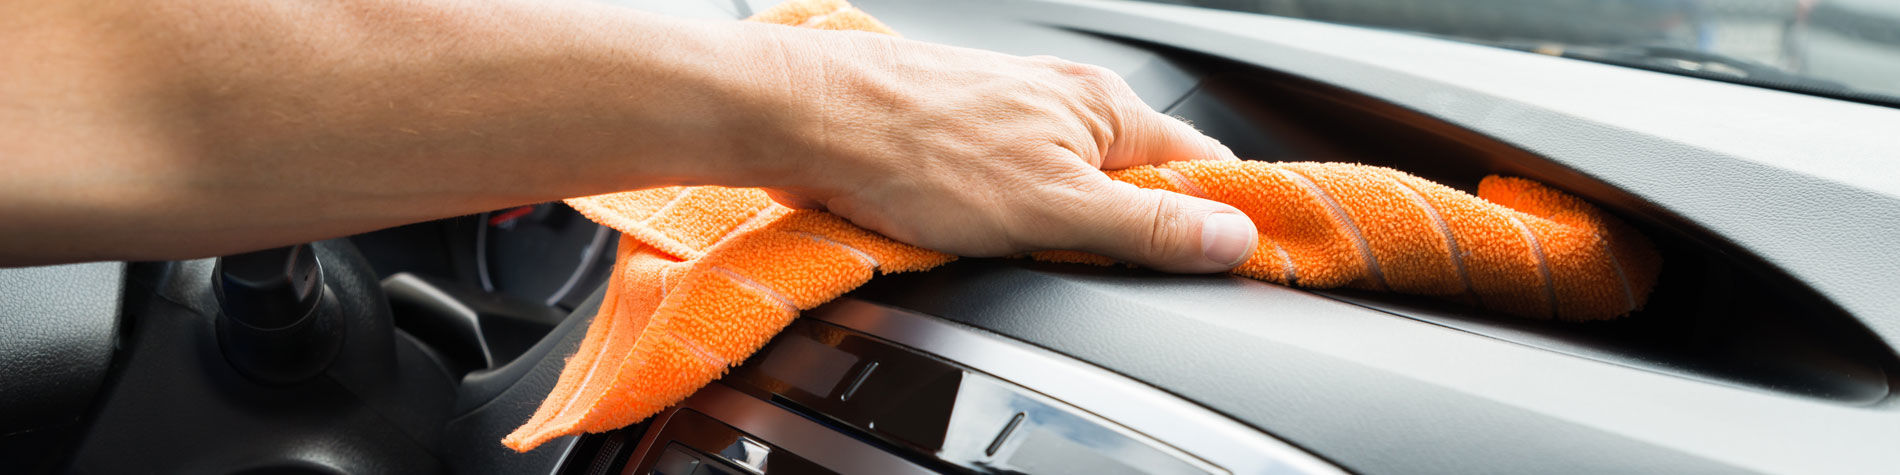 Les étapes pour un nettoyage intérieur efficace de voiture